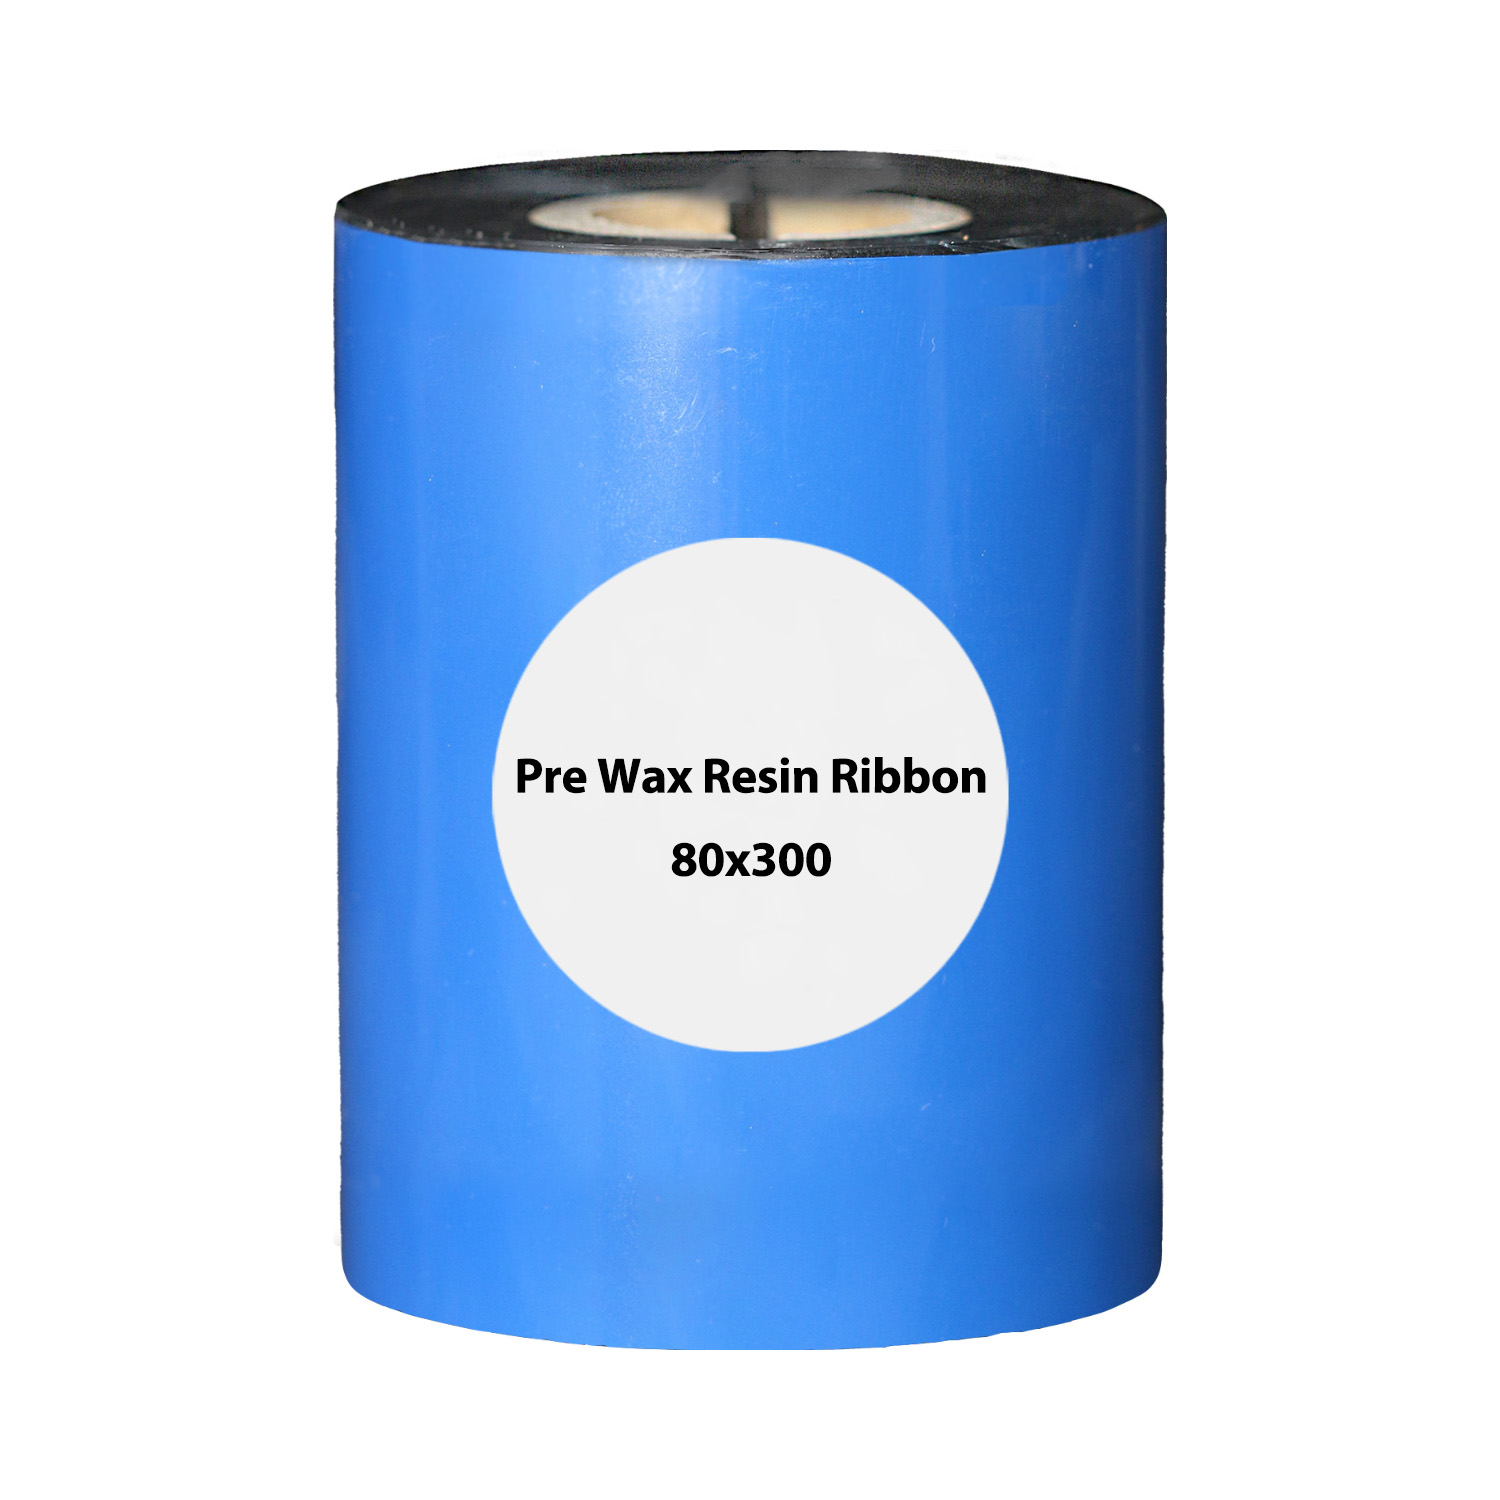 ریبون وکس رزین مدل WAX RESIN 300mx80mm بسته 36 عددی